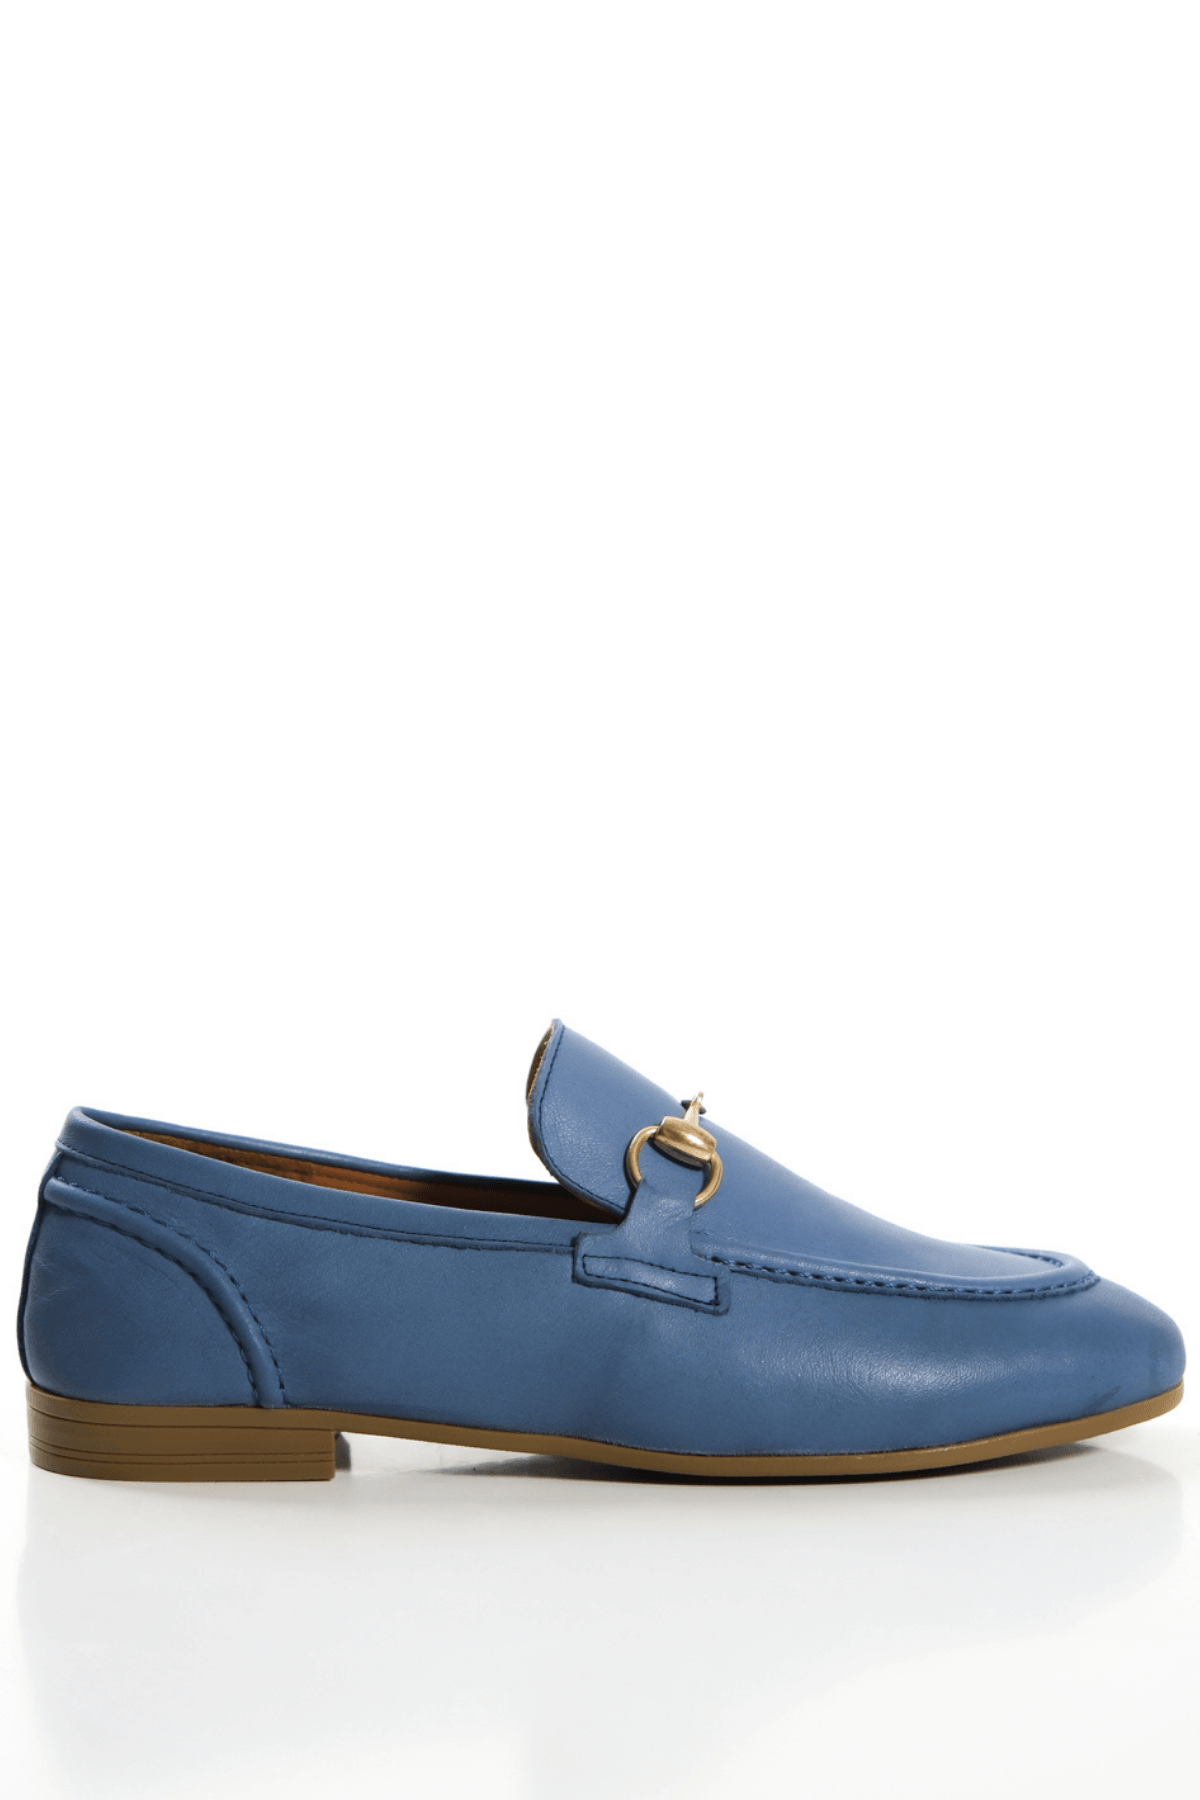 Mavi Hakiki Deri Kadın Loafer Gold Tokalı Babet Makosen Ayakkabı